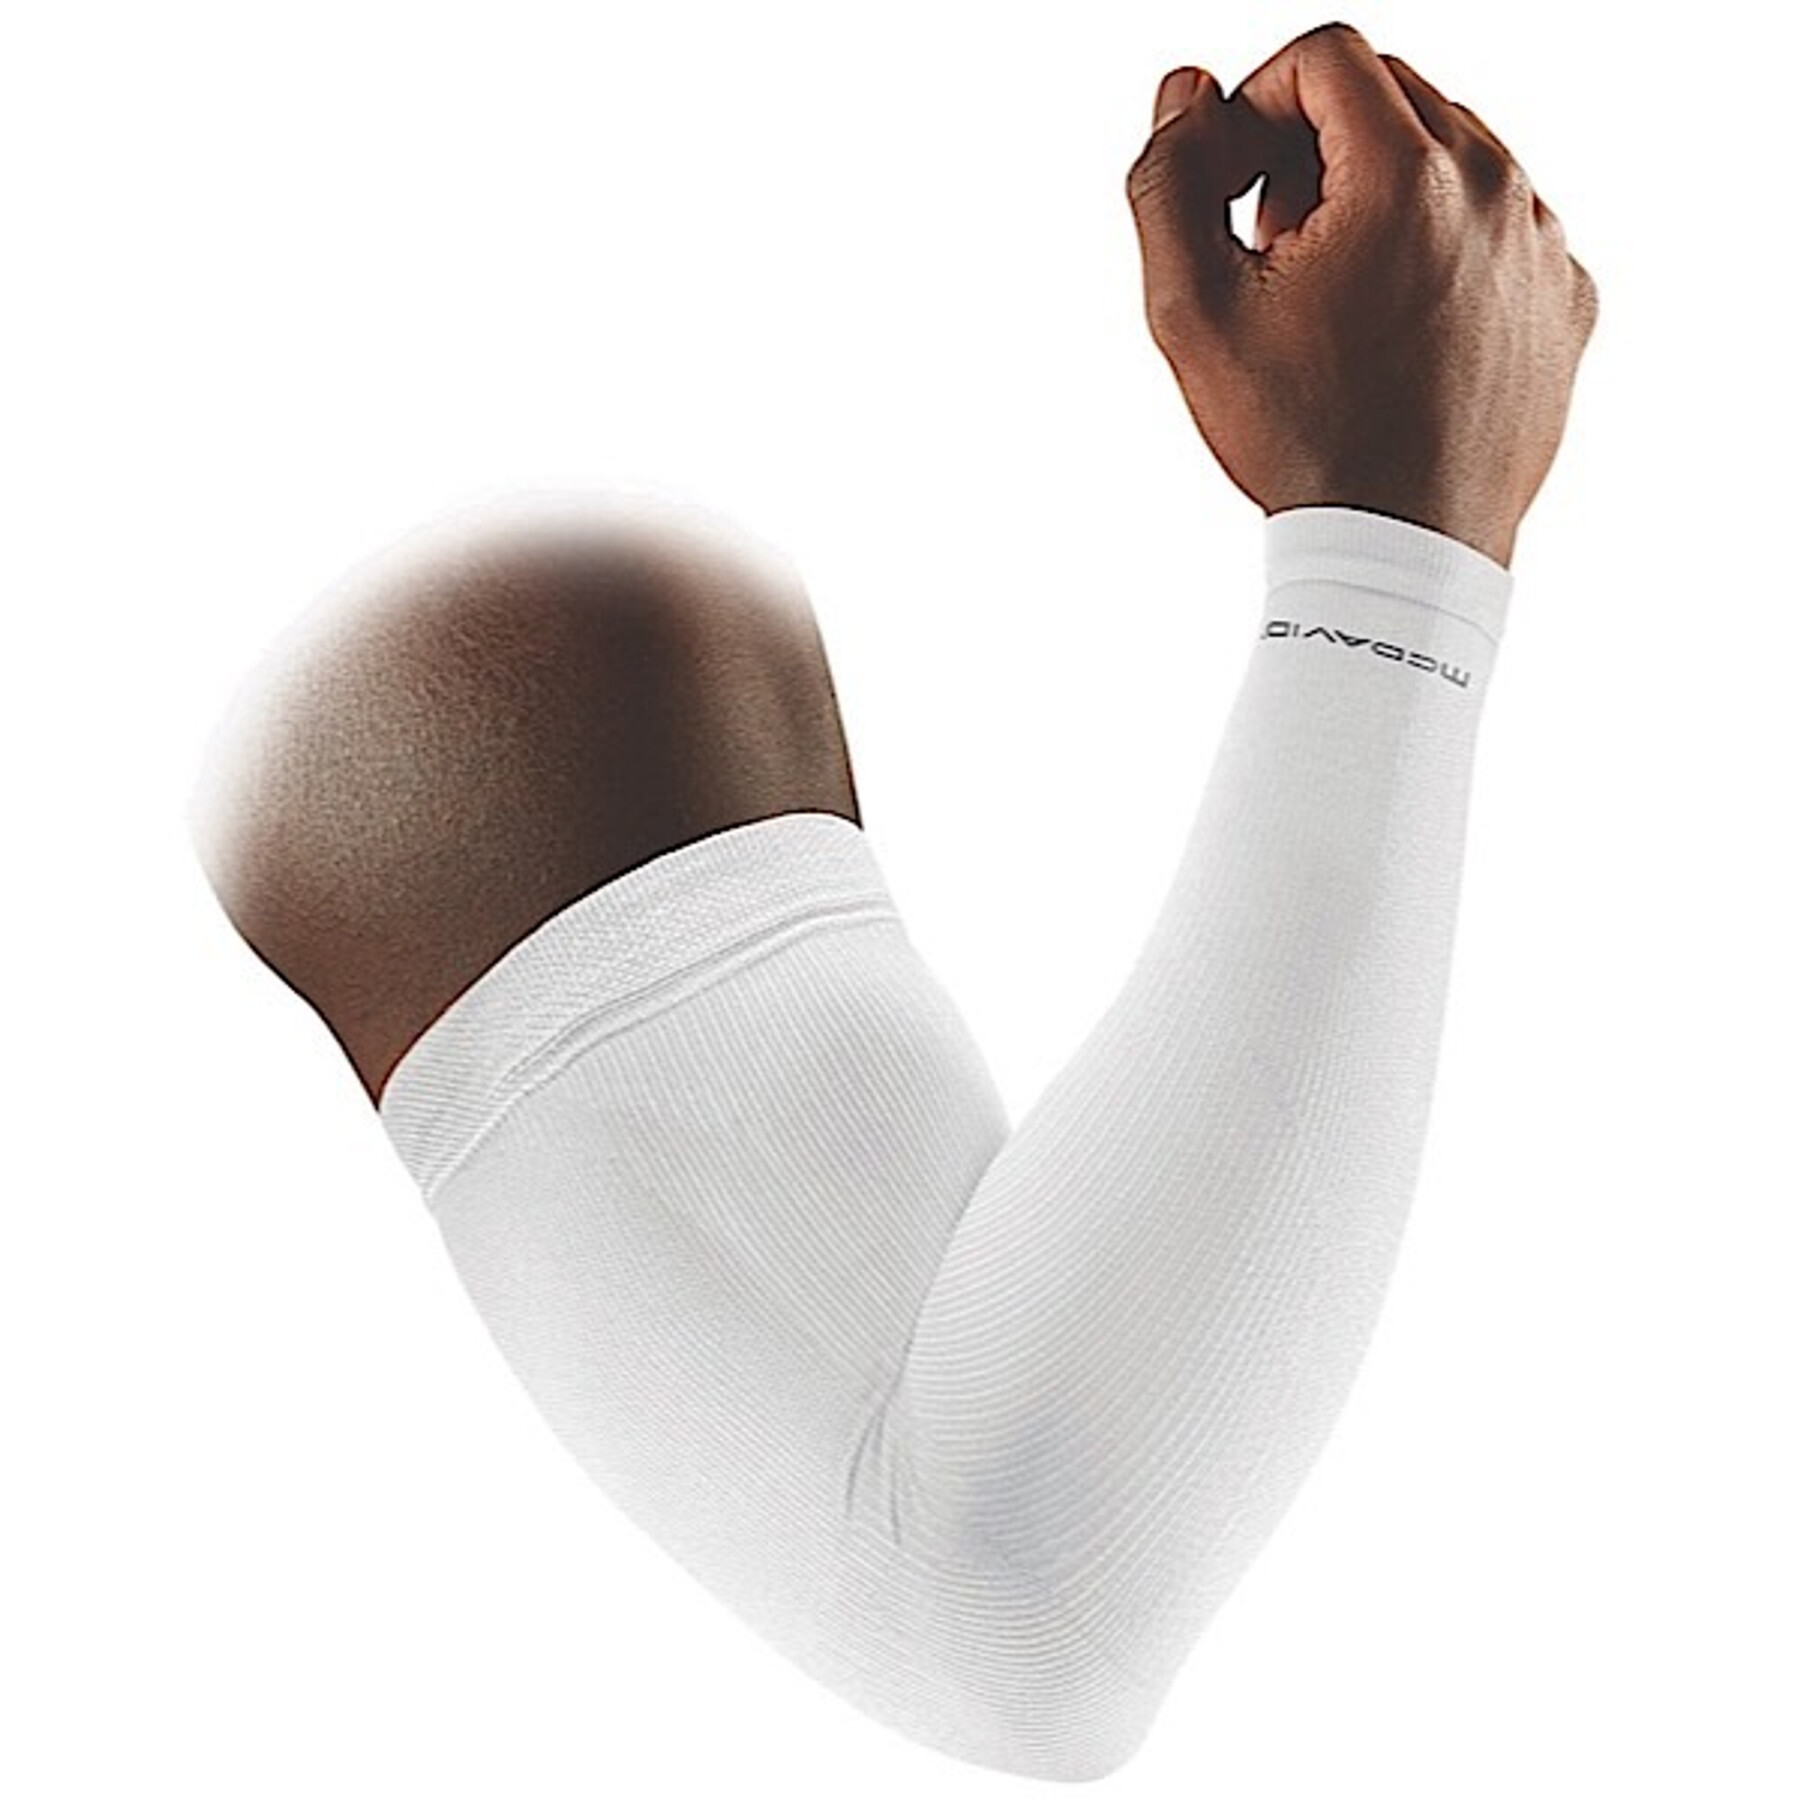 Manga de compressão para o braço McDavid bras ACTIVE